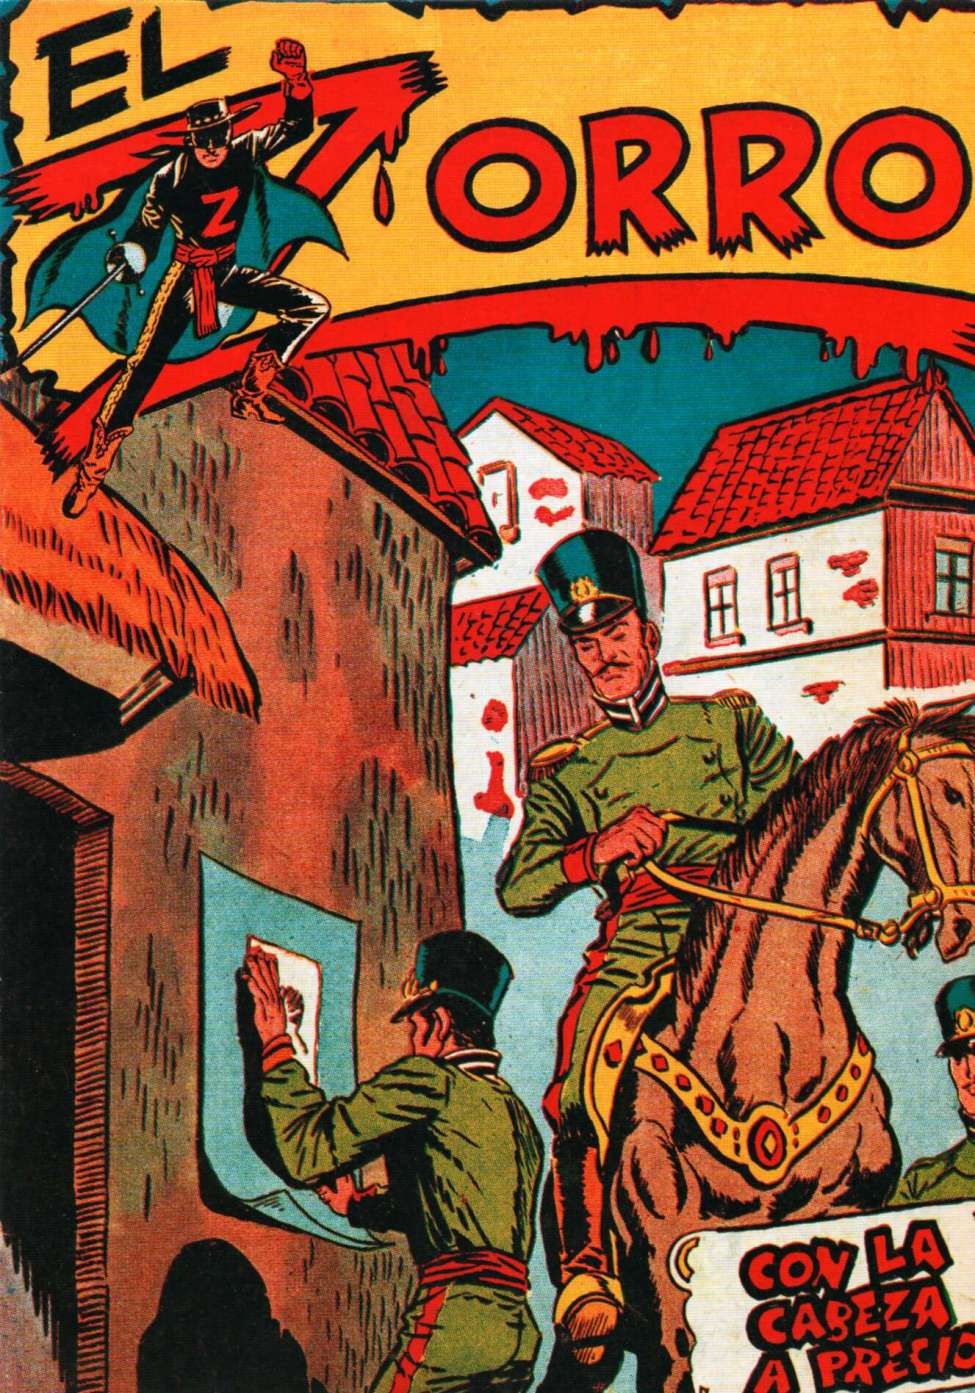 Comic Book Cover For El Zorro 3 - Con La Cabeza a Precio